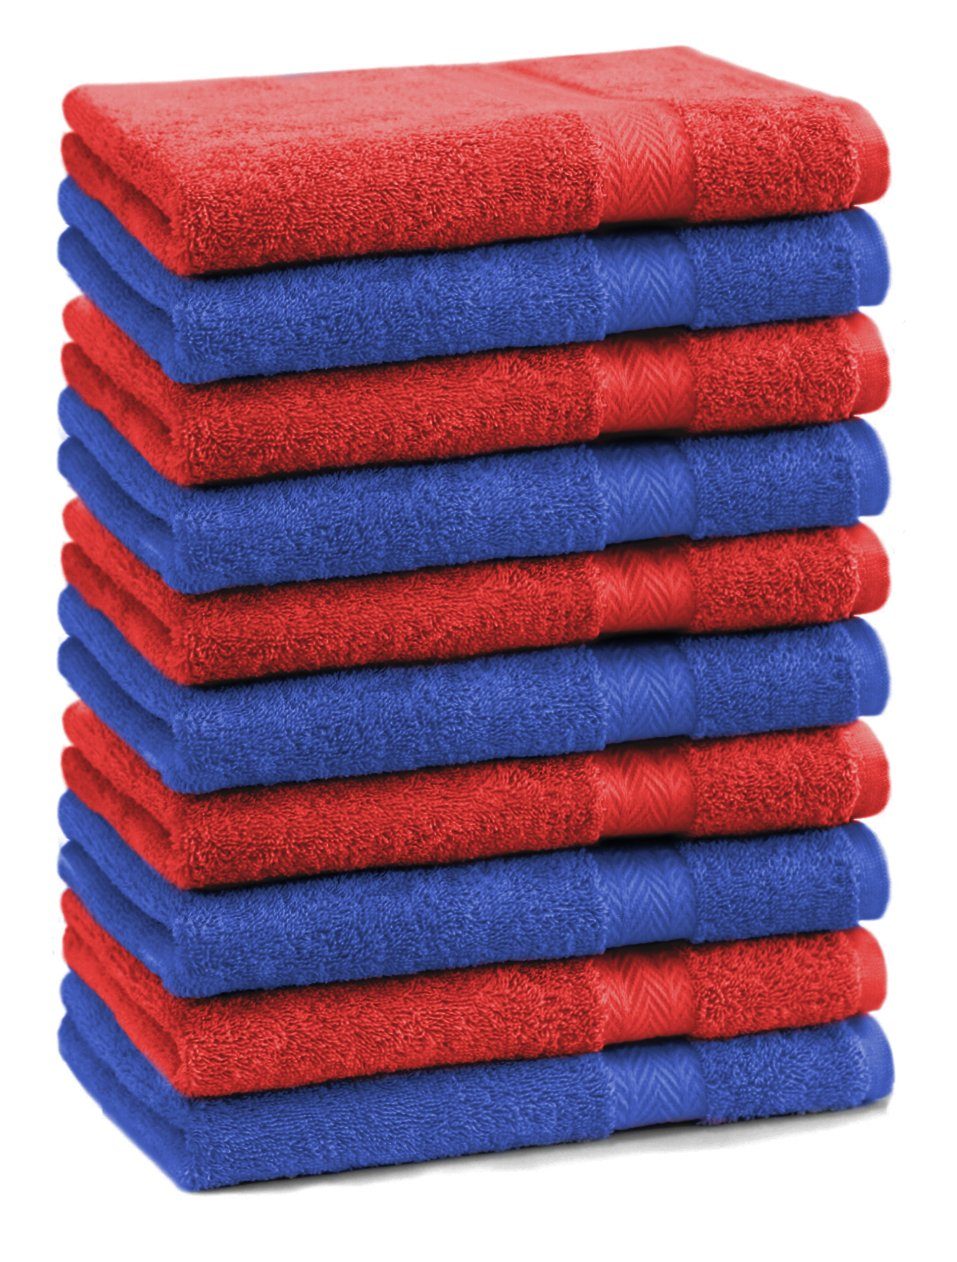 Betz Gästehandtücher 10 Stück Gästehandtücher Premium 100% Baumwolle Gästetuch-Set 30x50 cm Farbe royalblau und rot, 100% Baumwolle